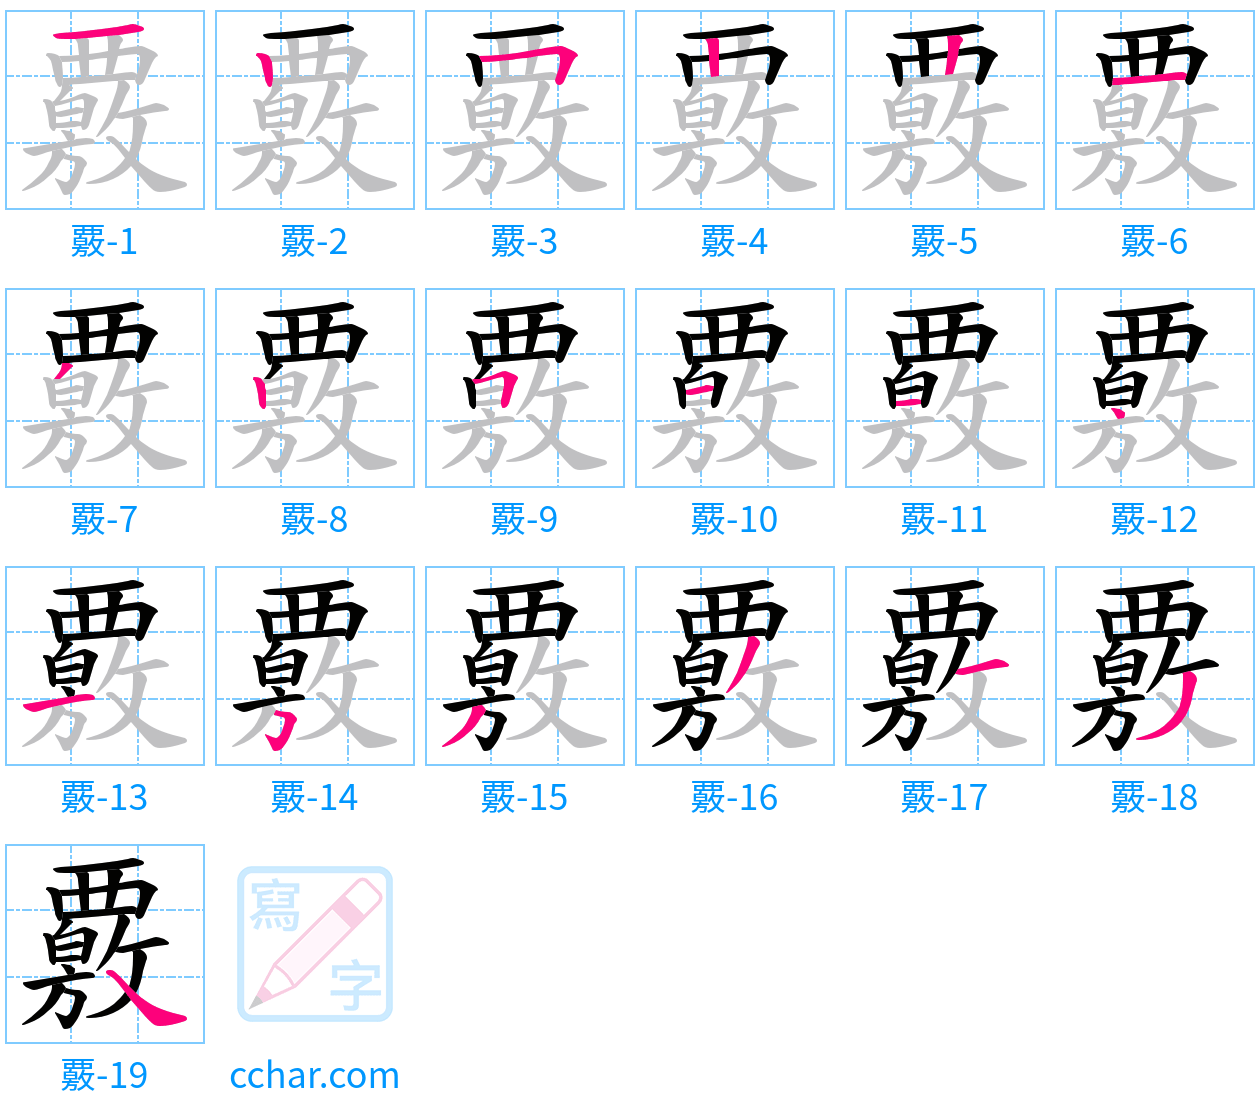 覈 stroke order step-by-step diagram